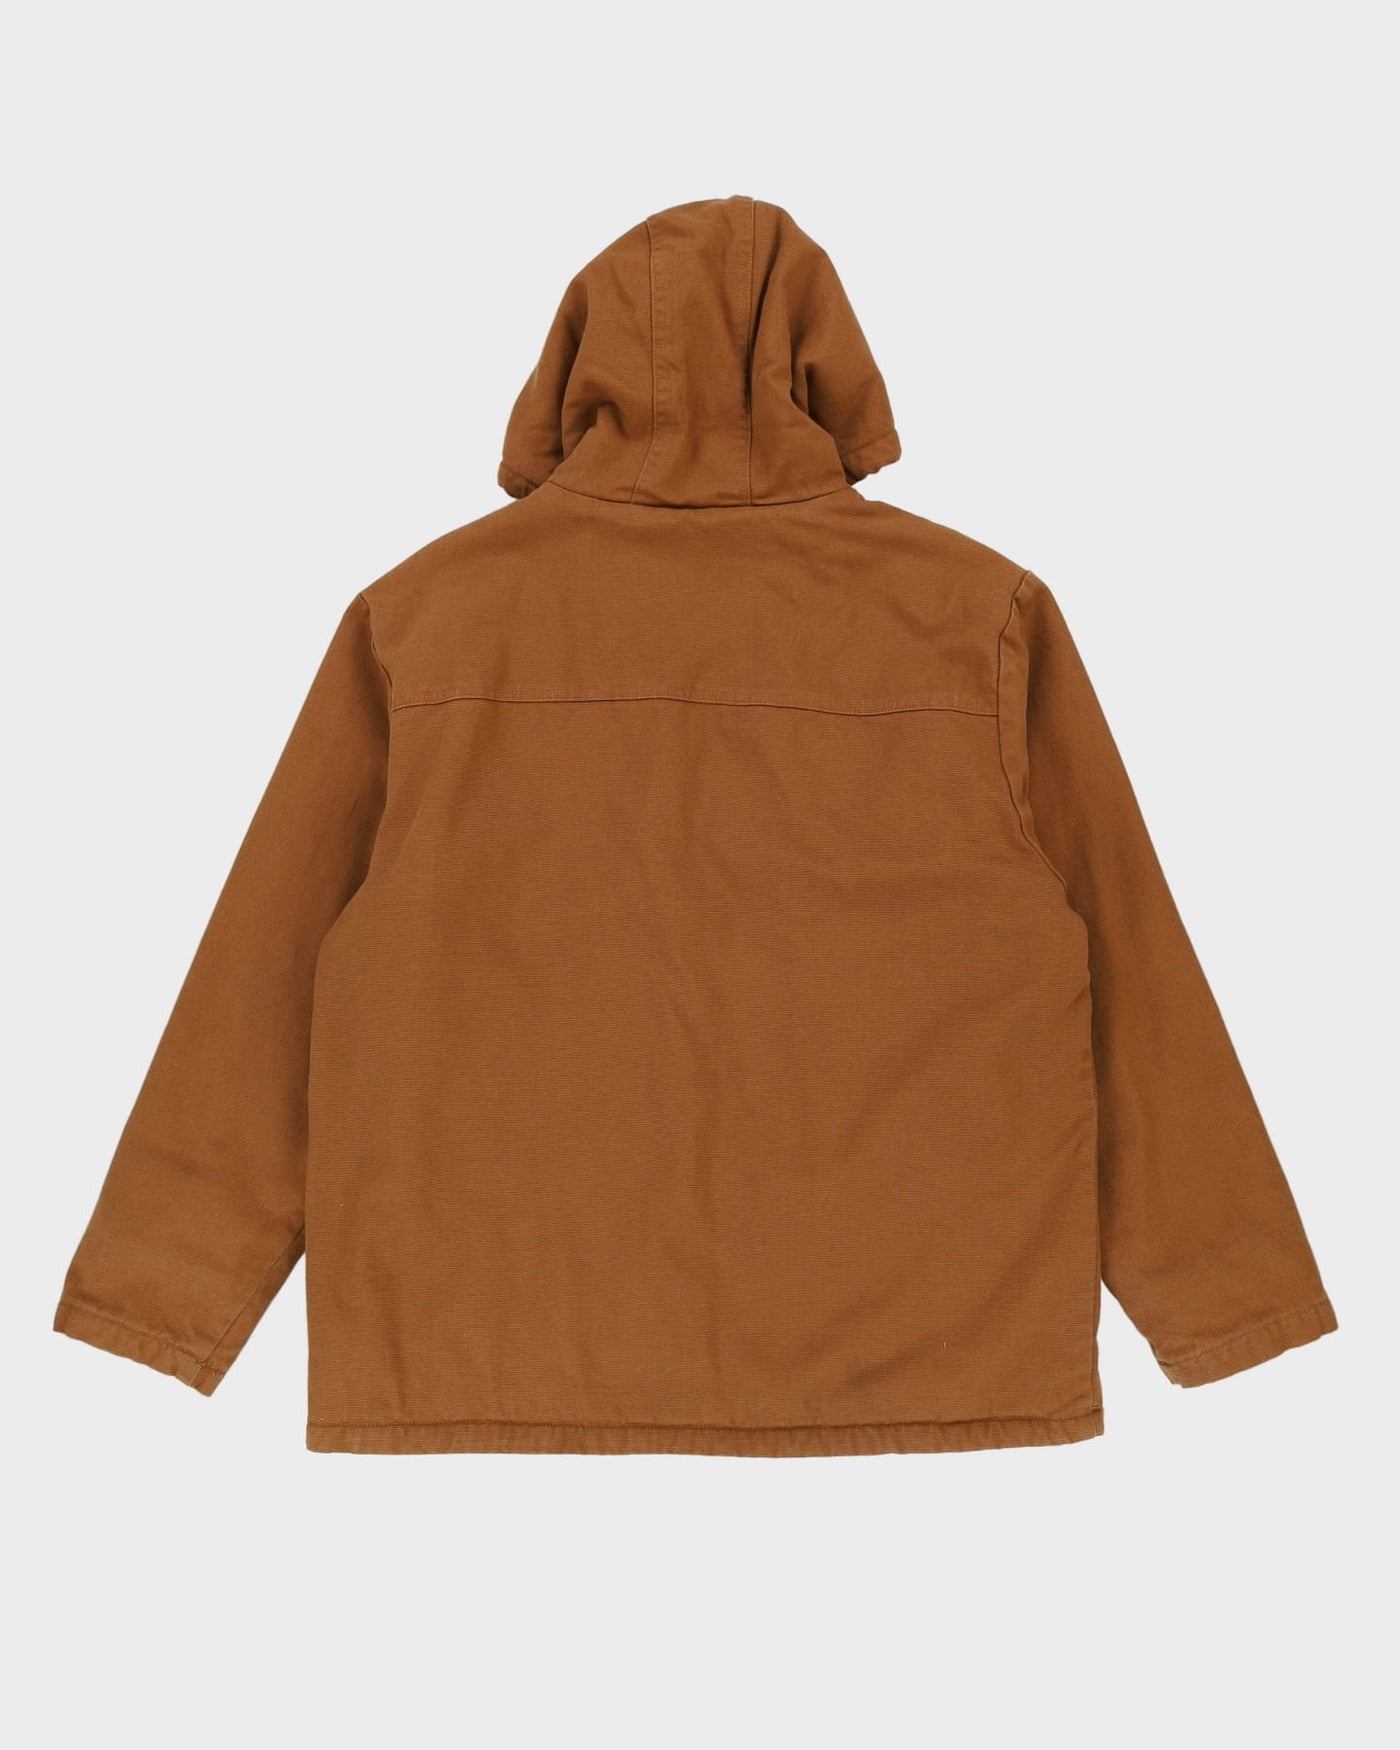 Lee Brown Workwear / Chore Jacket - L